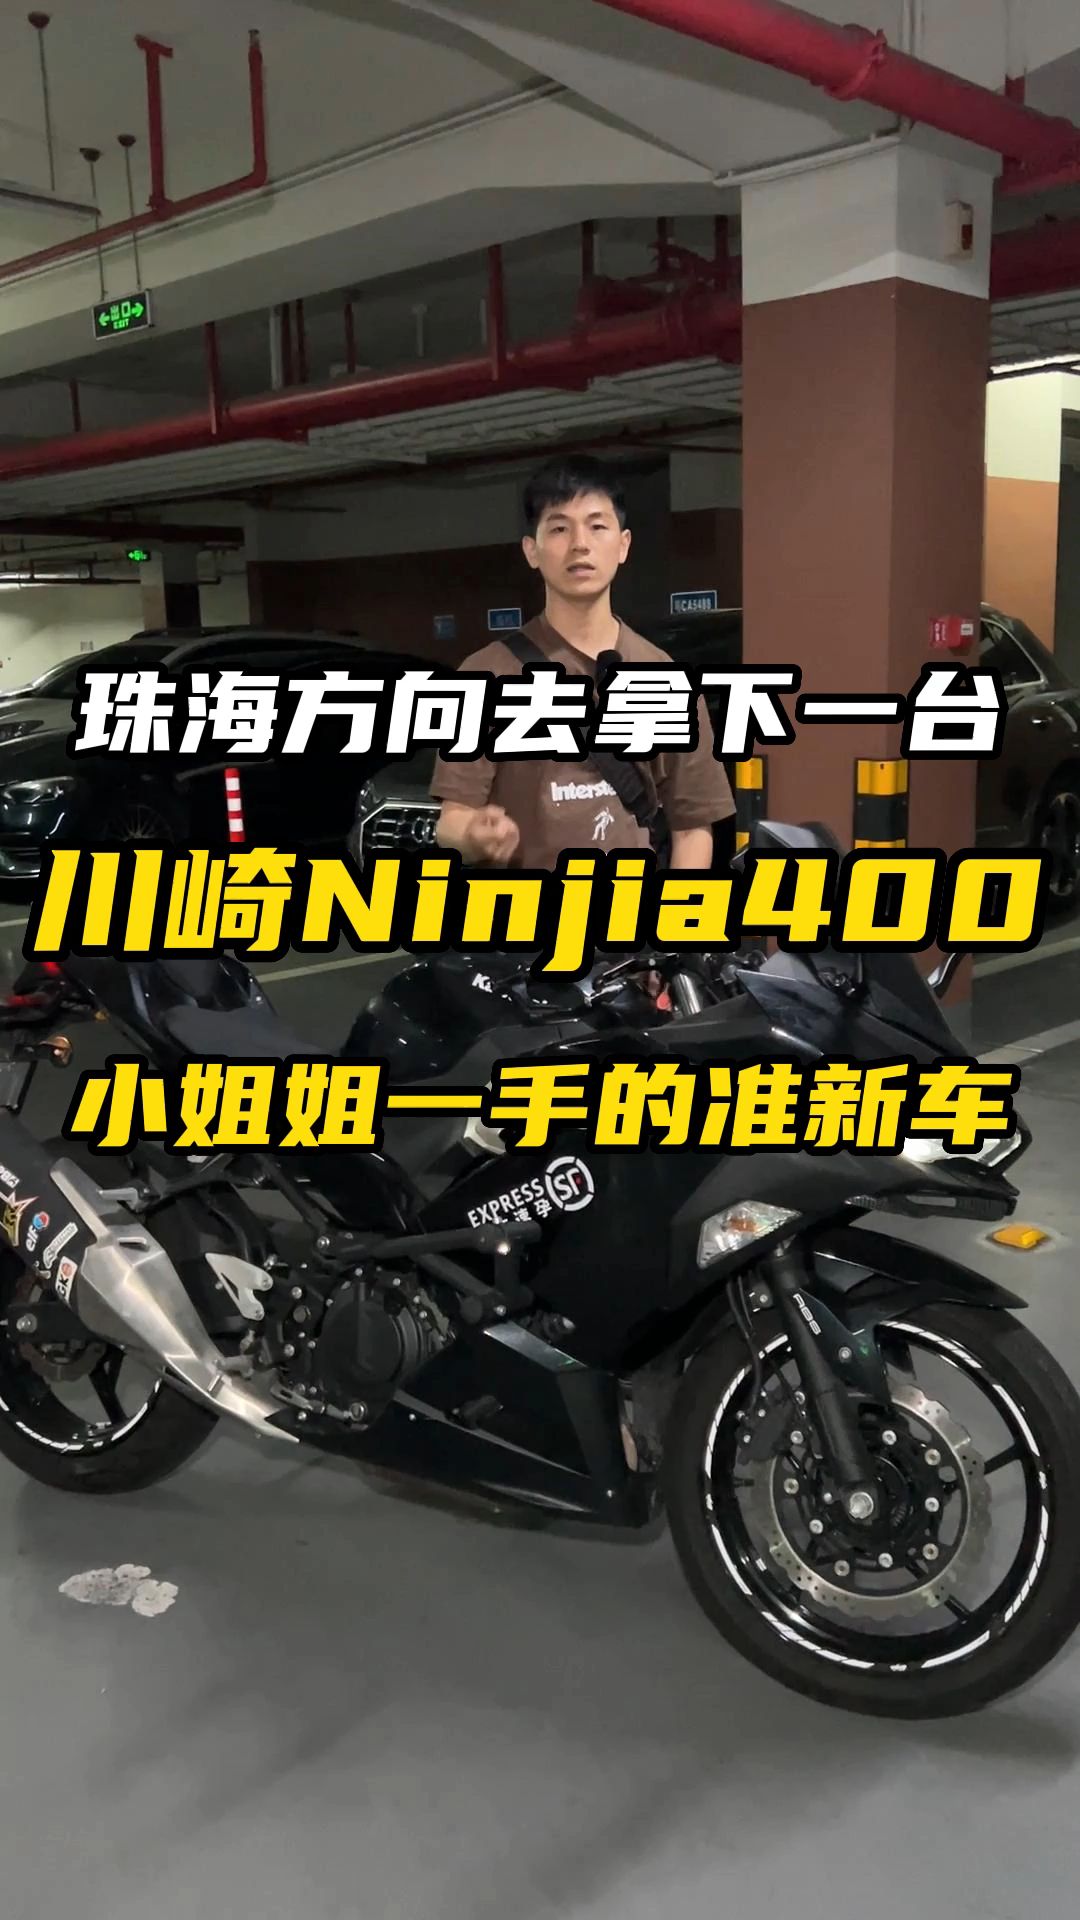 川崎Ninja400，900多公里整备后跟新的一样